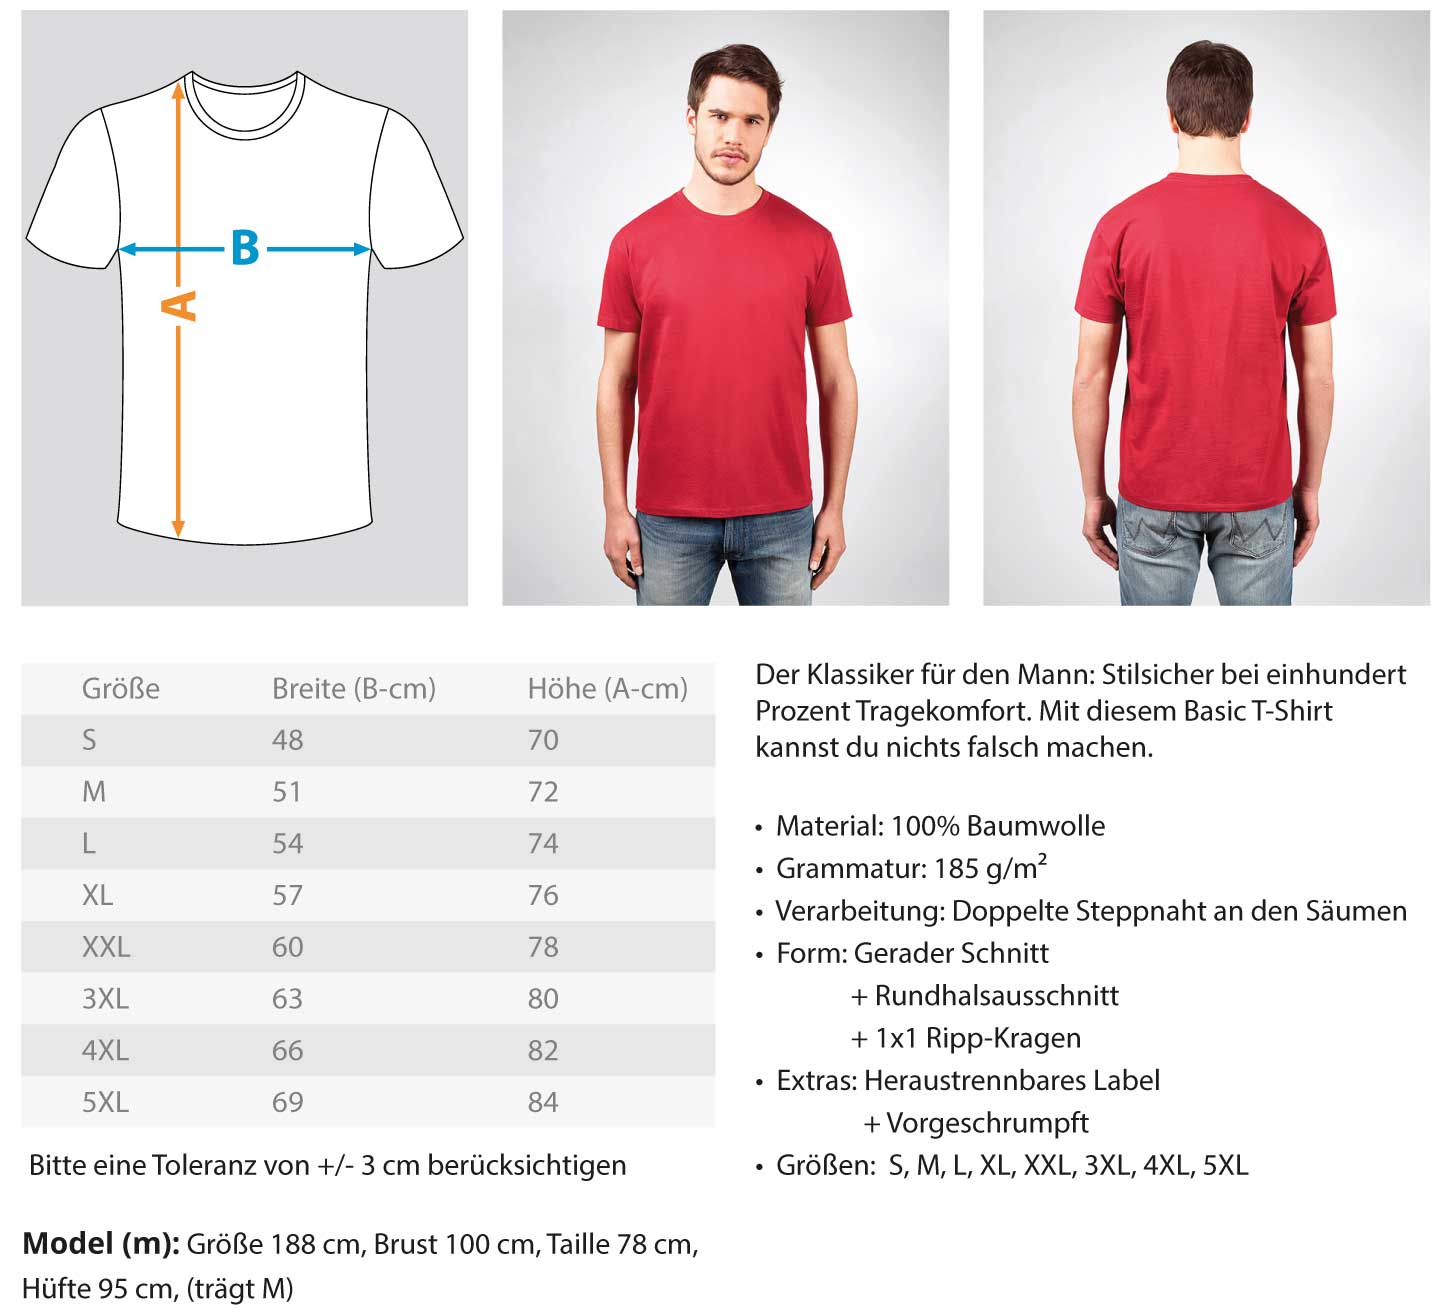 Gerüstbauer T-Shirt ACHTUNG GERÜSTBAUER €21.95 Gerüstbauer - Shop >>